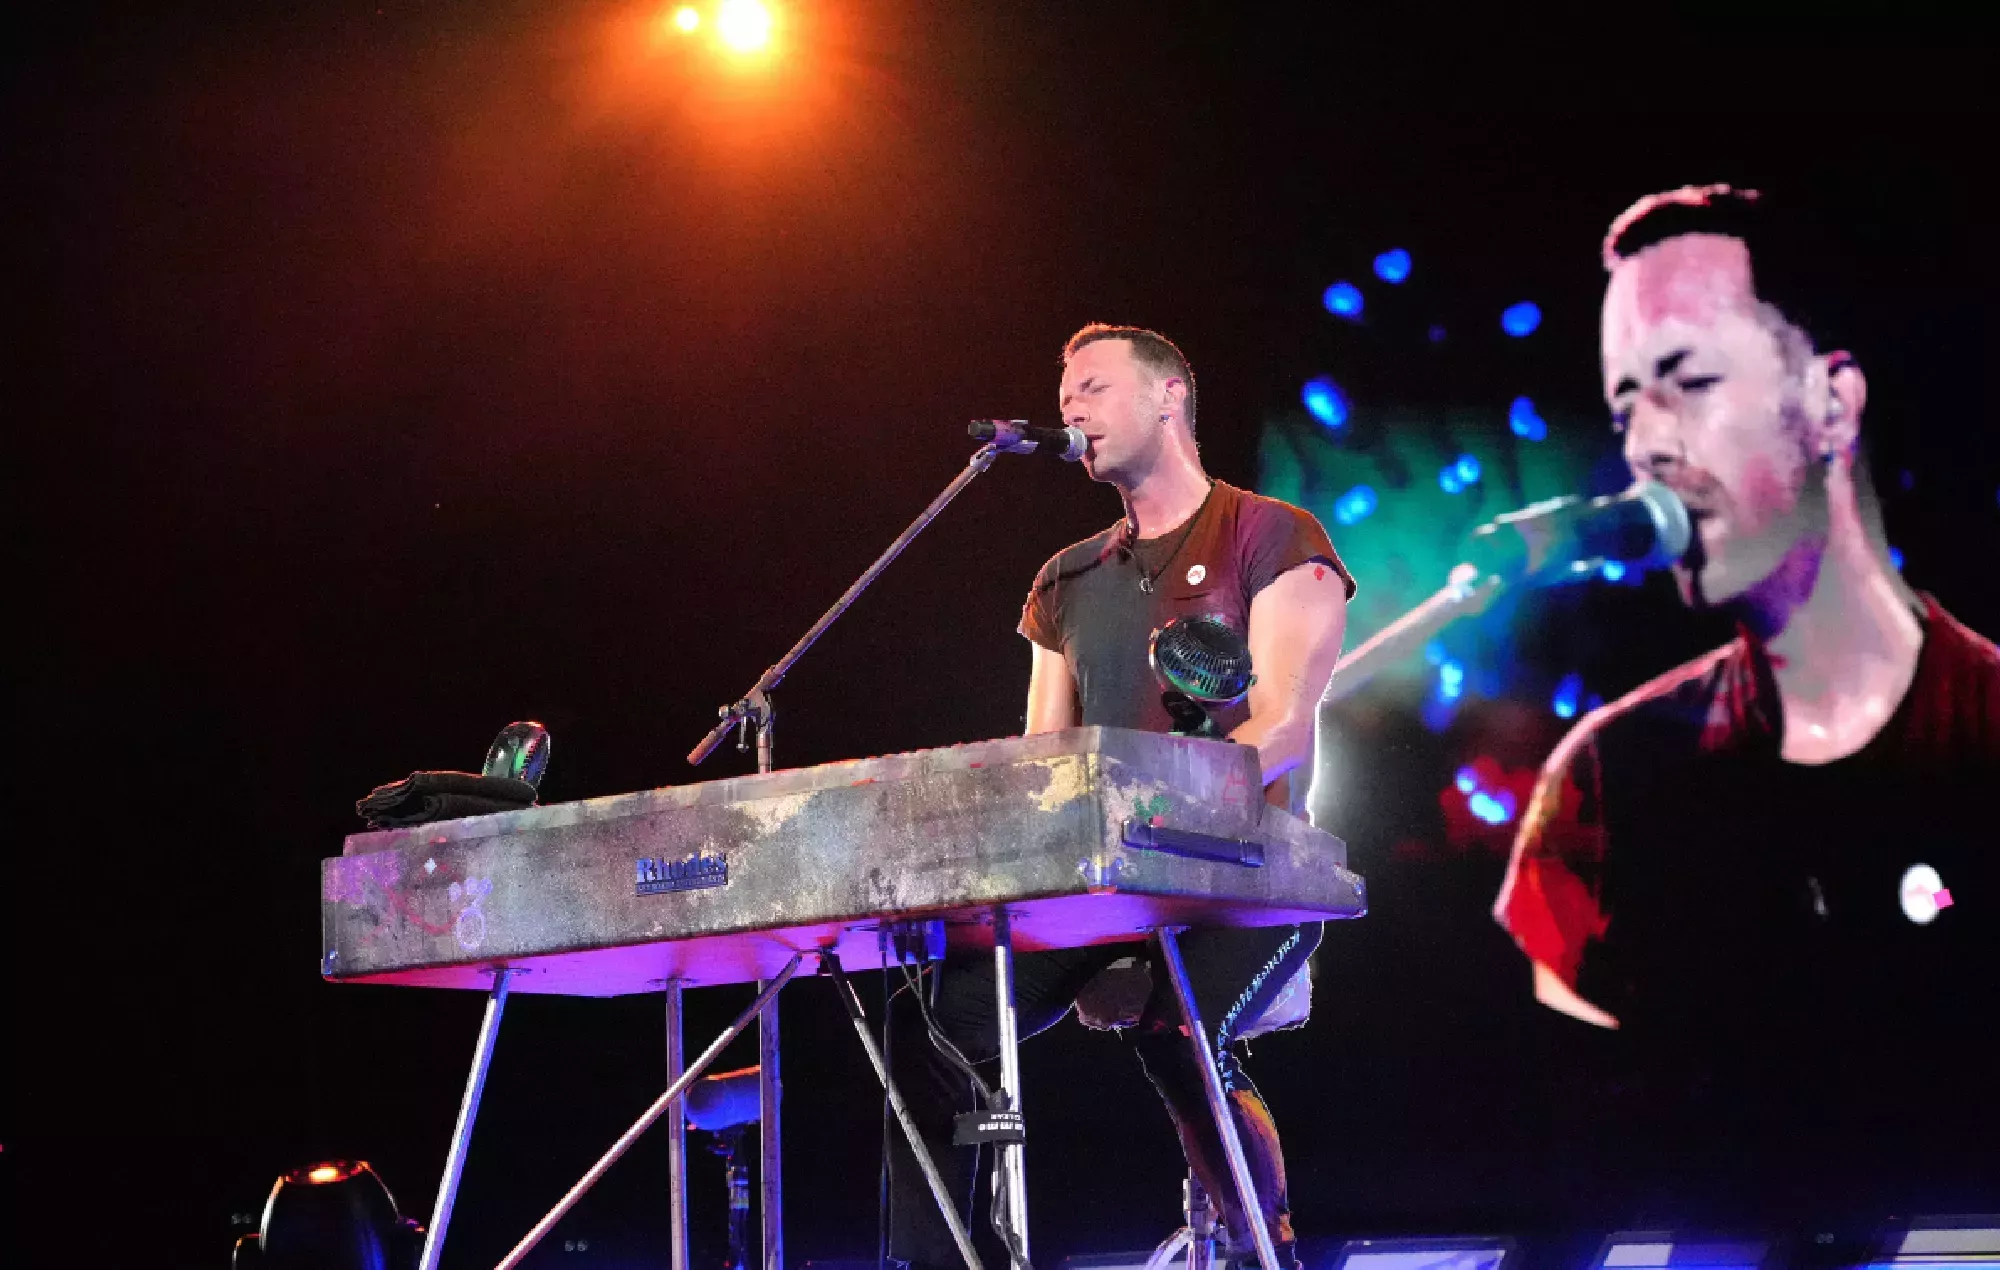 Mira cómo Chris Martin se apodera del piano de un pub familiar para tocar 'A Sky Full of Stars' de Coldplay